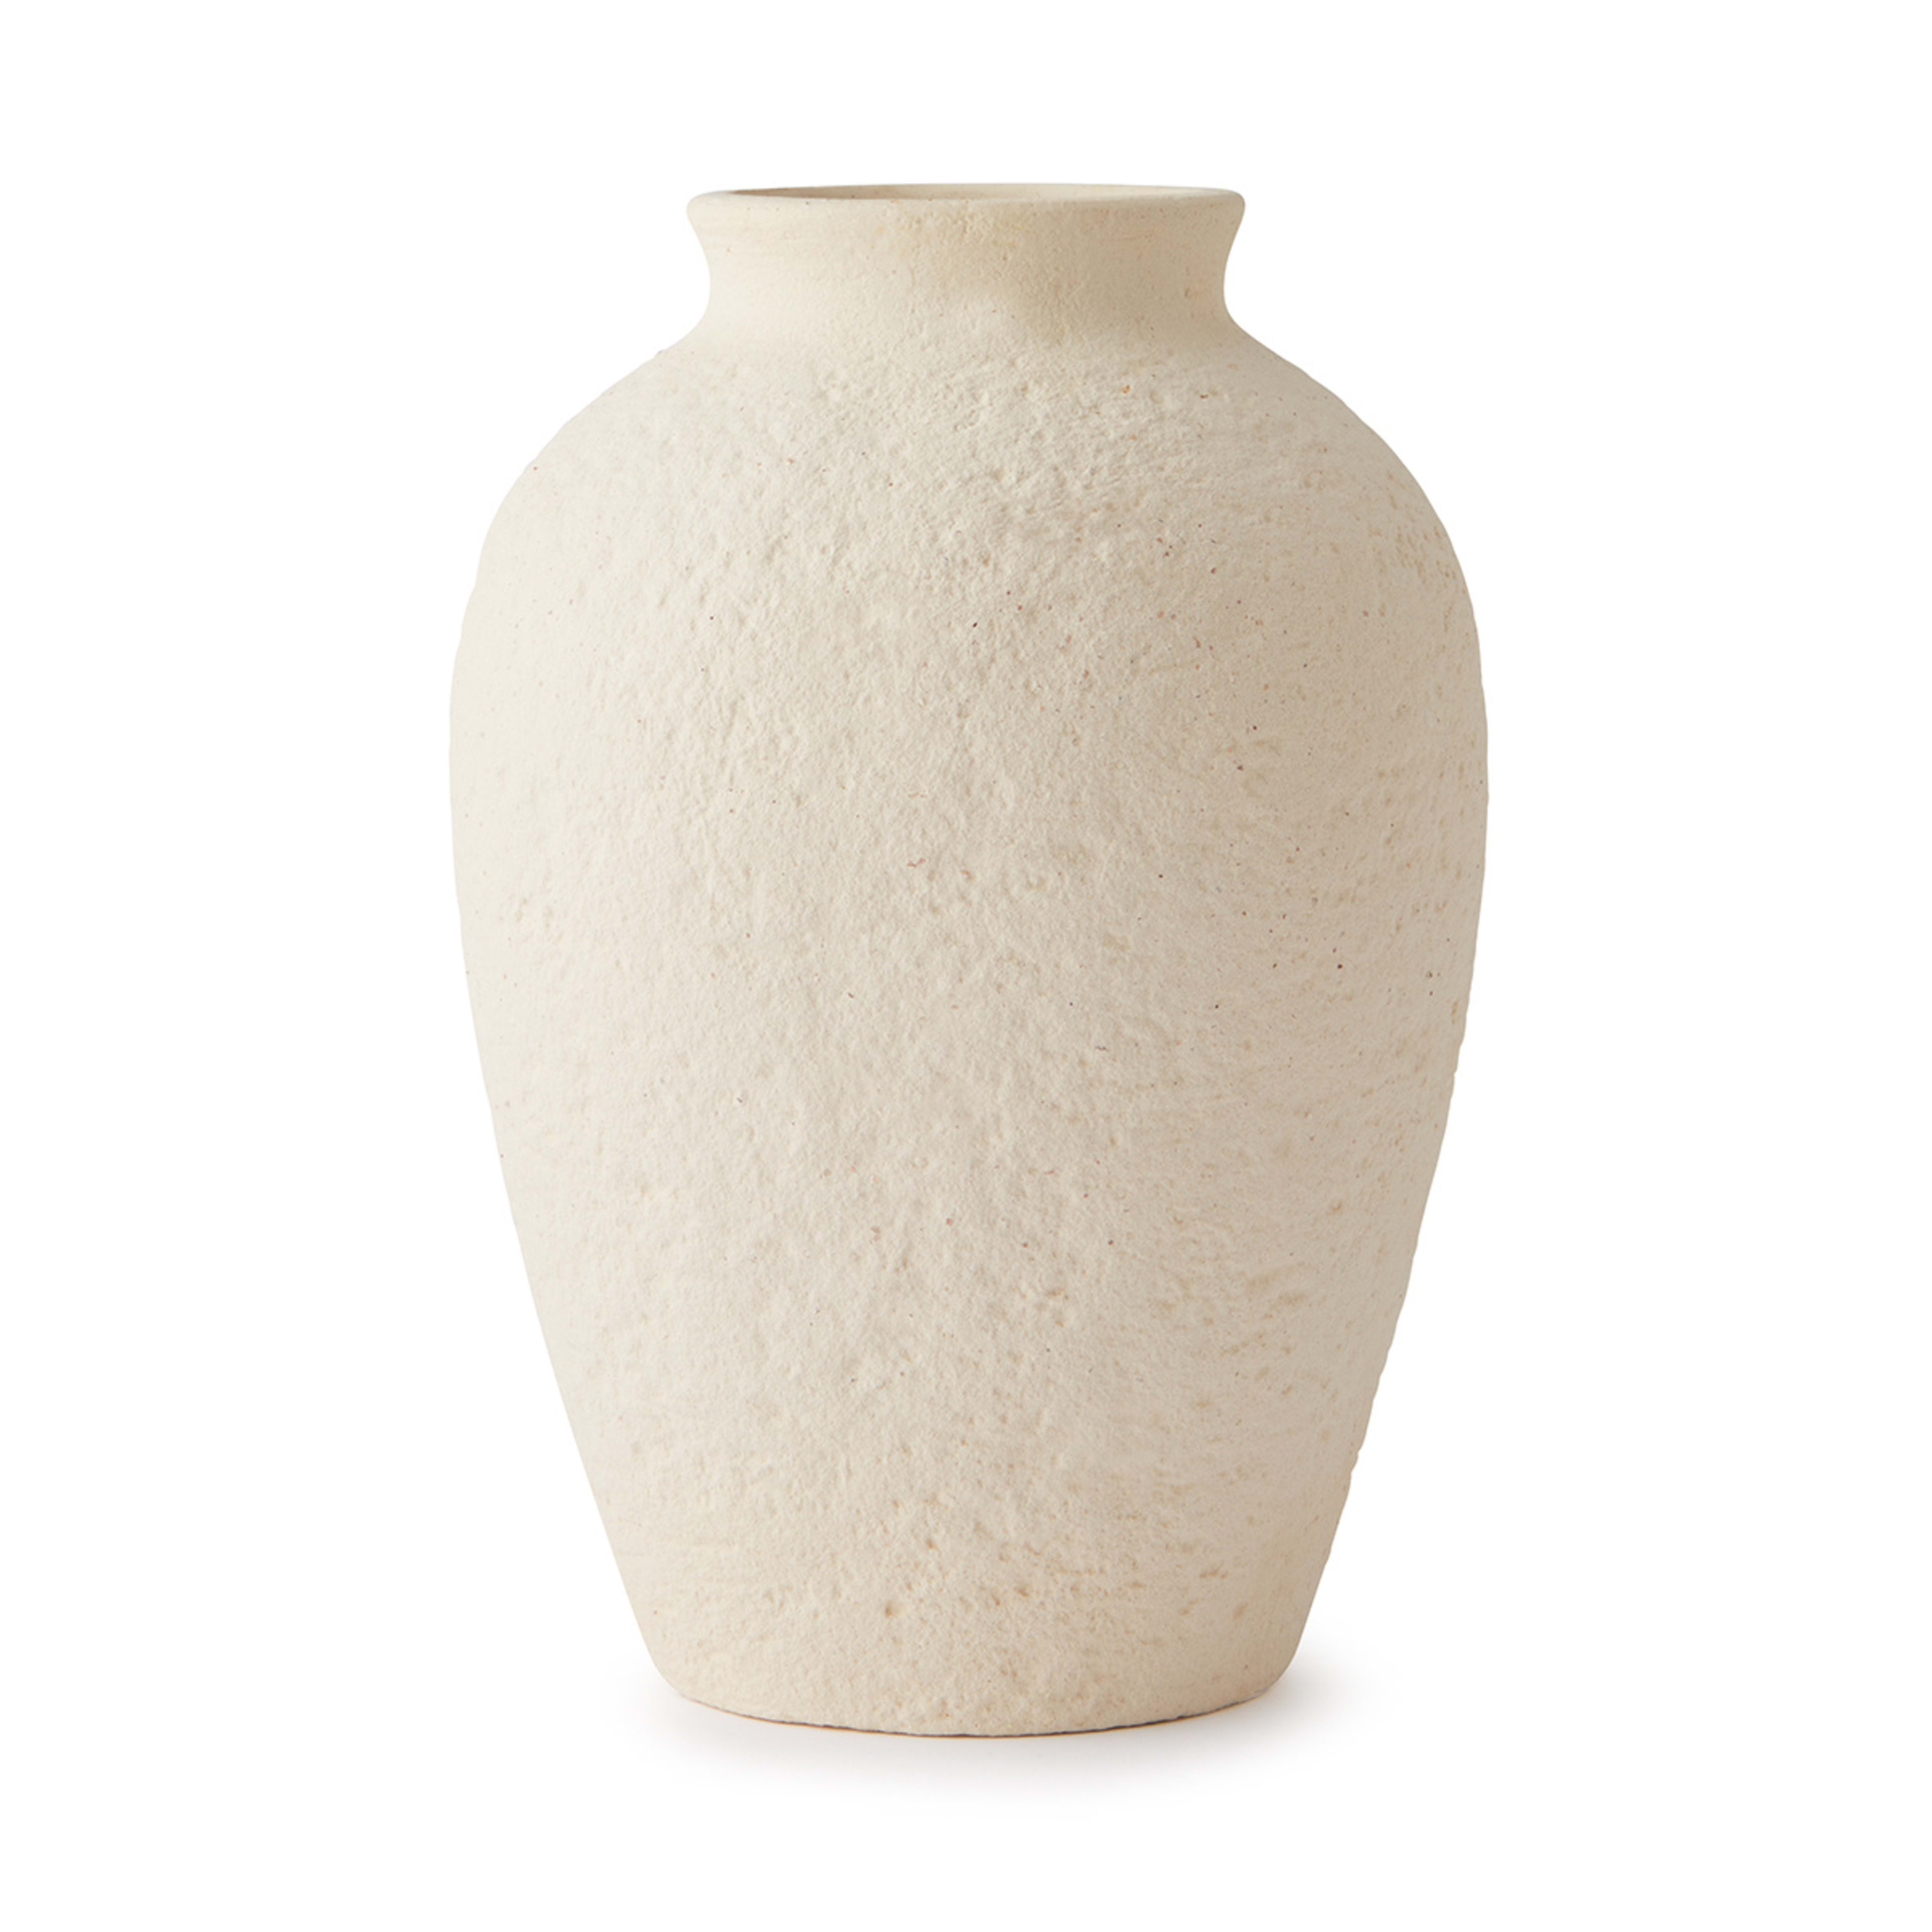 Textured Urn Shaped Vase